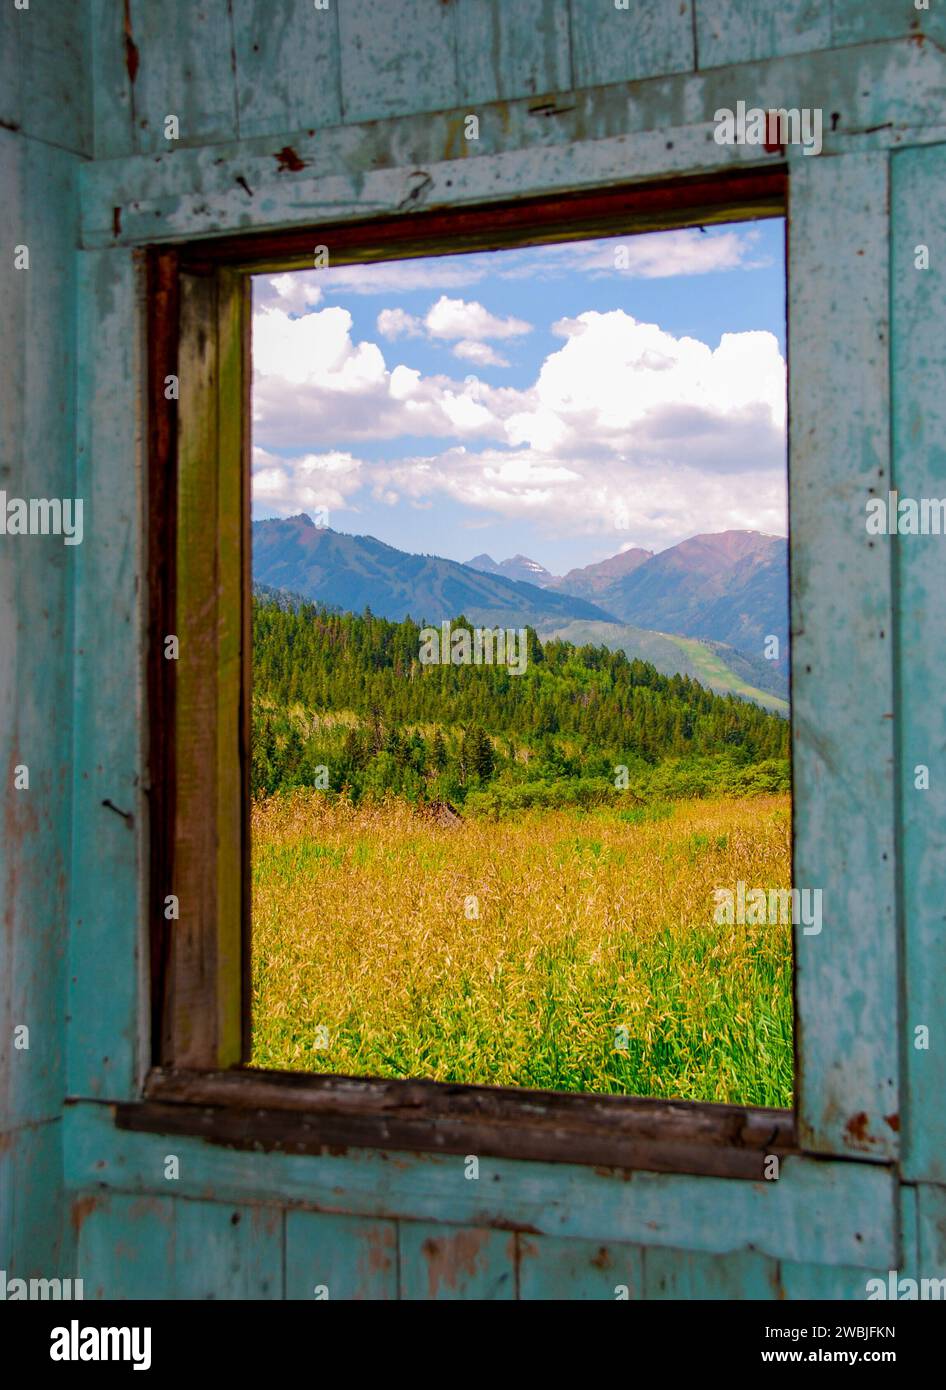 Une vue panoramique sur les collines verdoyantes vues à travers la fenêtre ouverte Banque D'Images